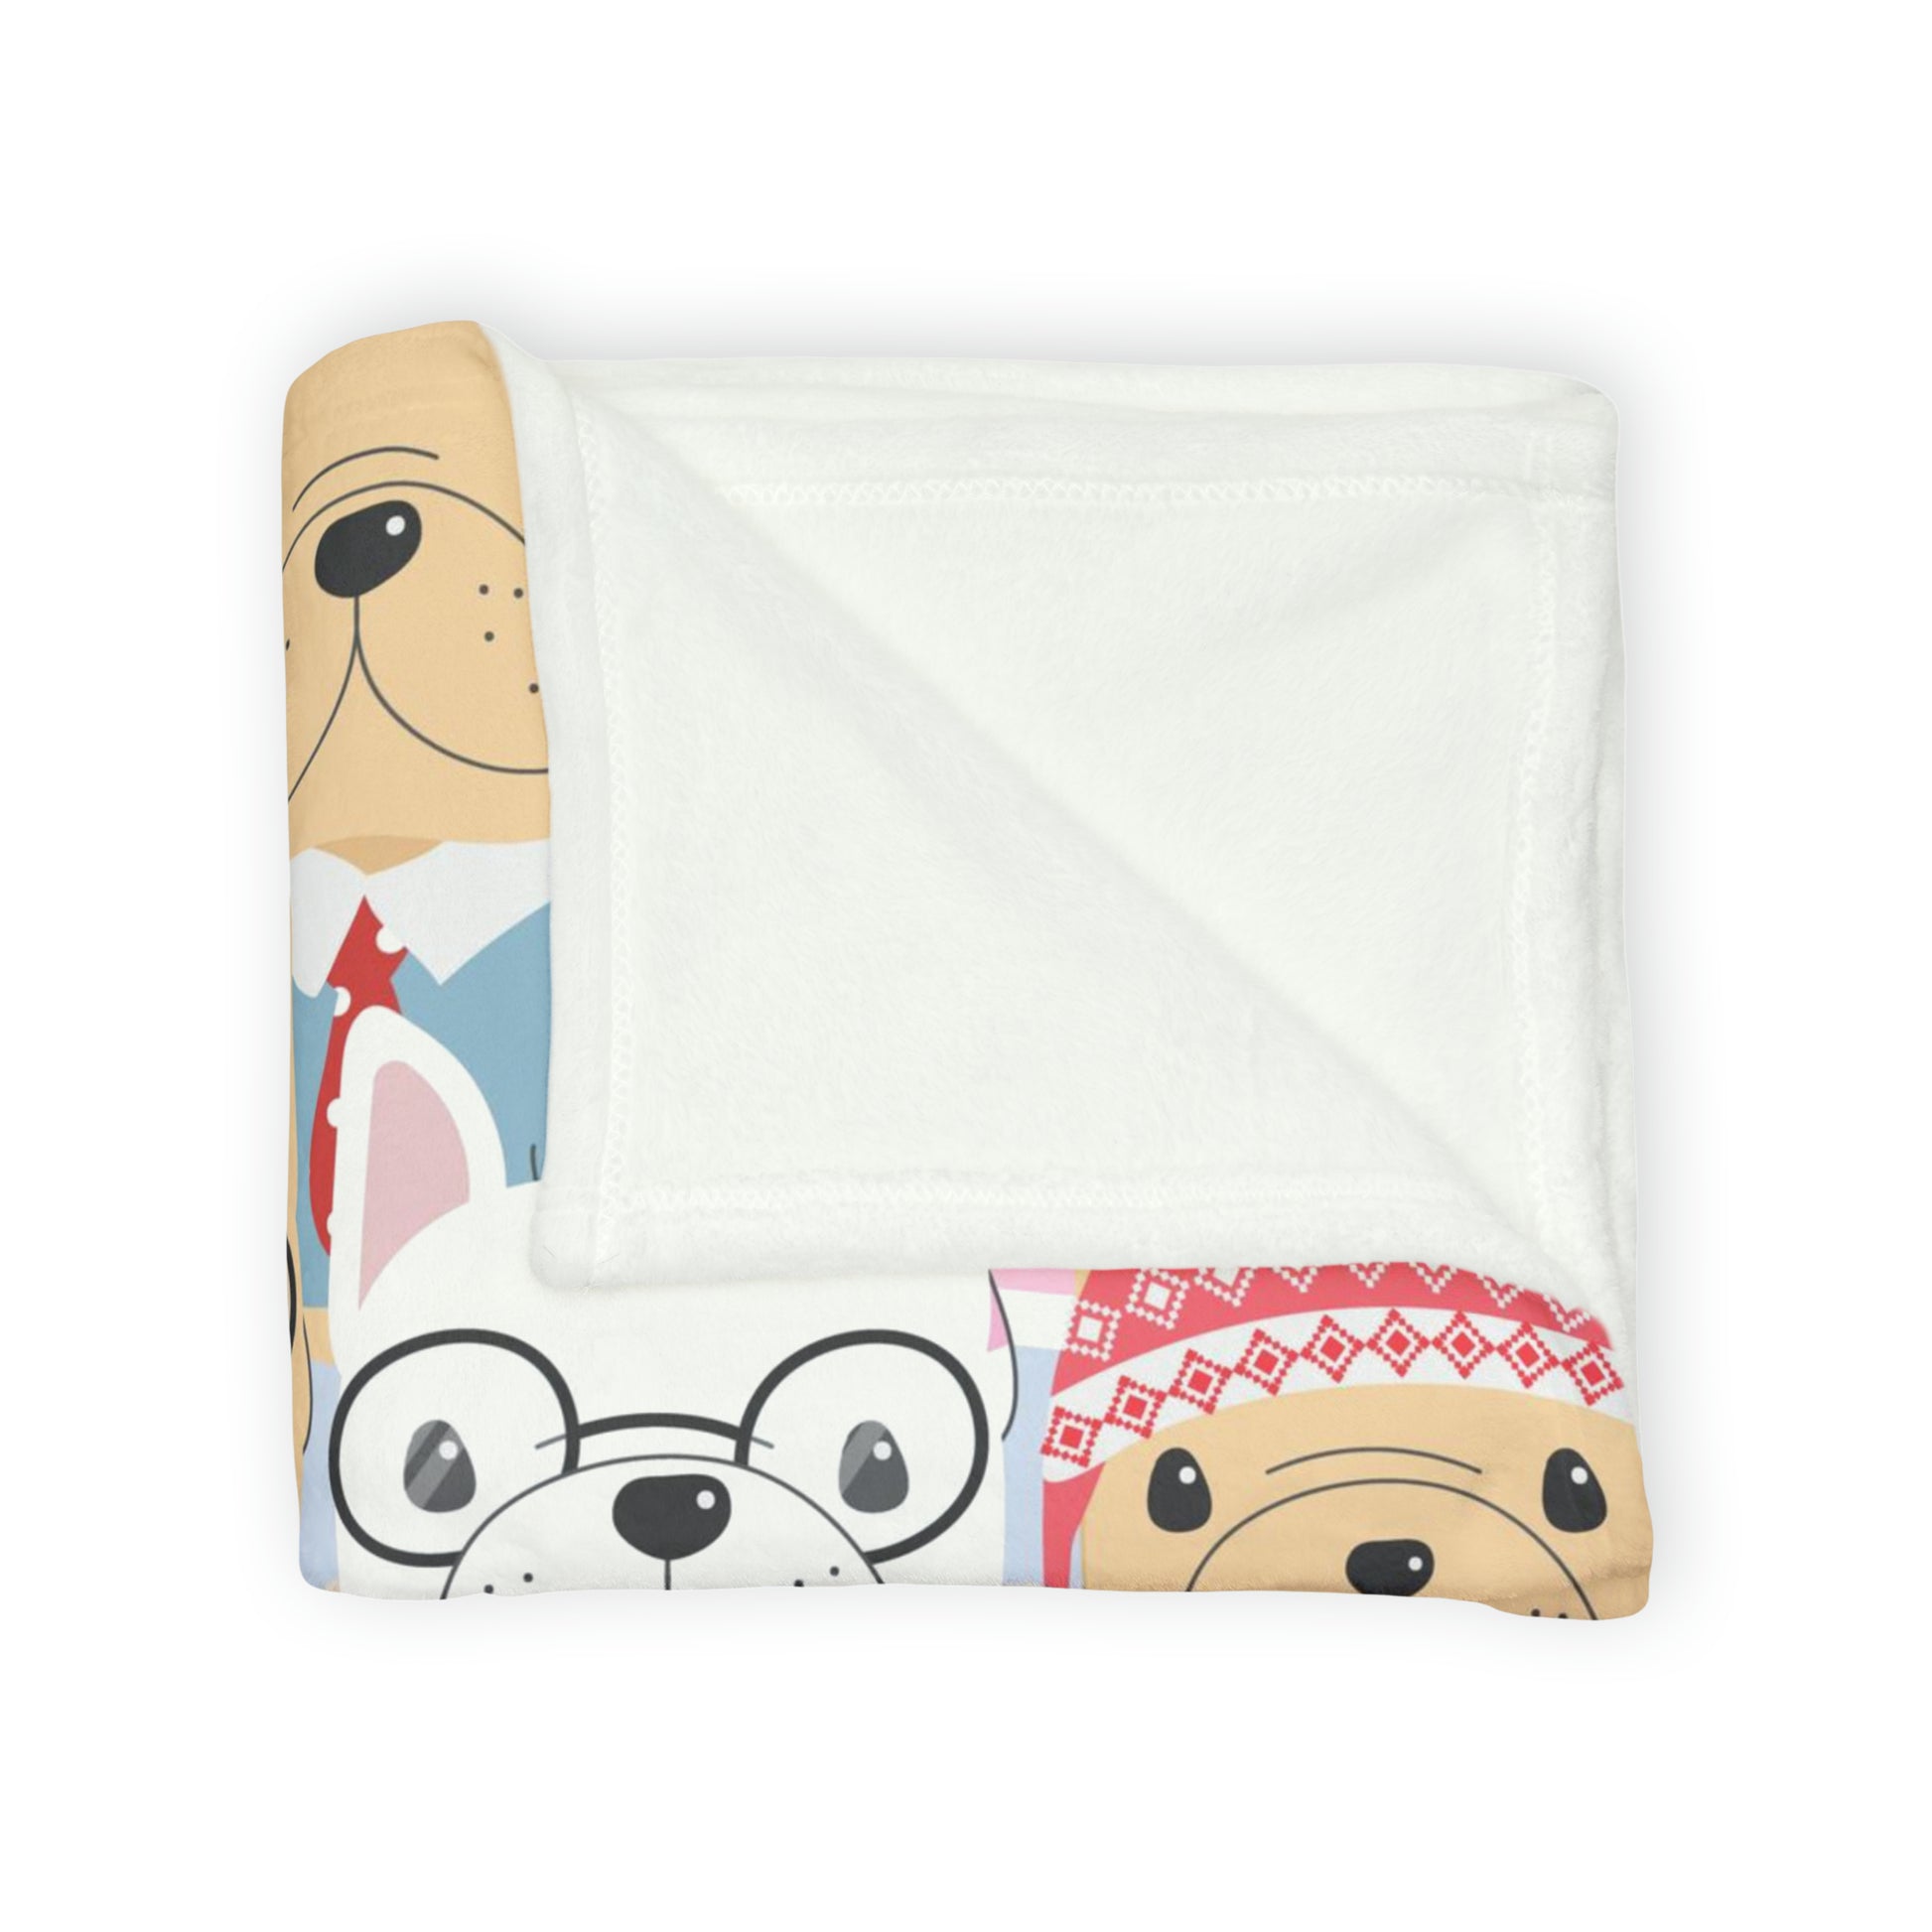 Dog Crowd - Soft Polyester Blanket Blanket